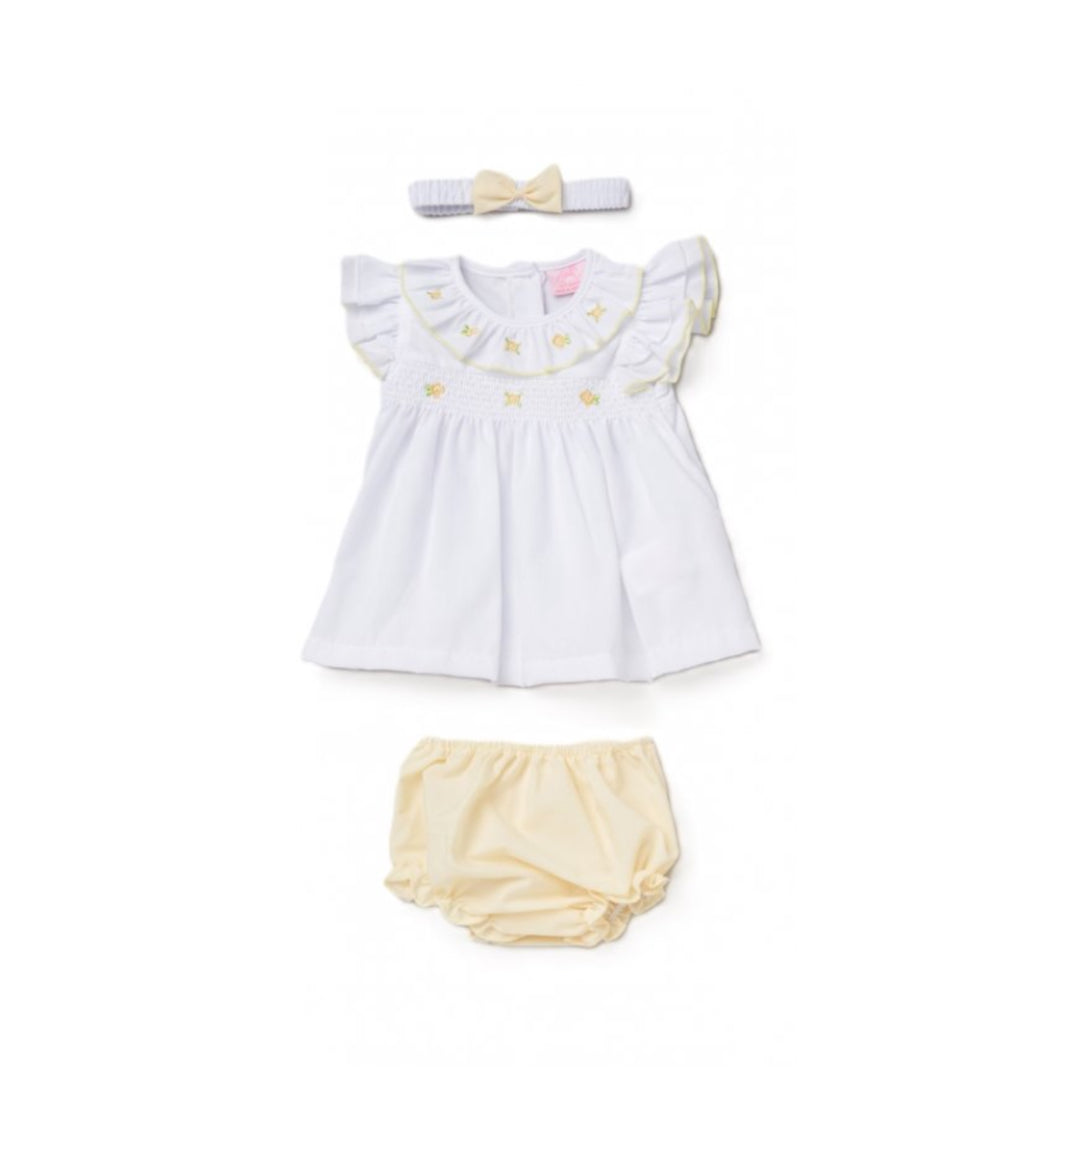 Rock-a-Bye Baby White & Lemon Dress & Headband Set